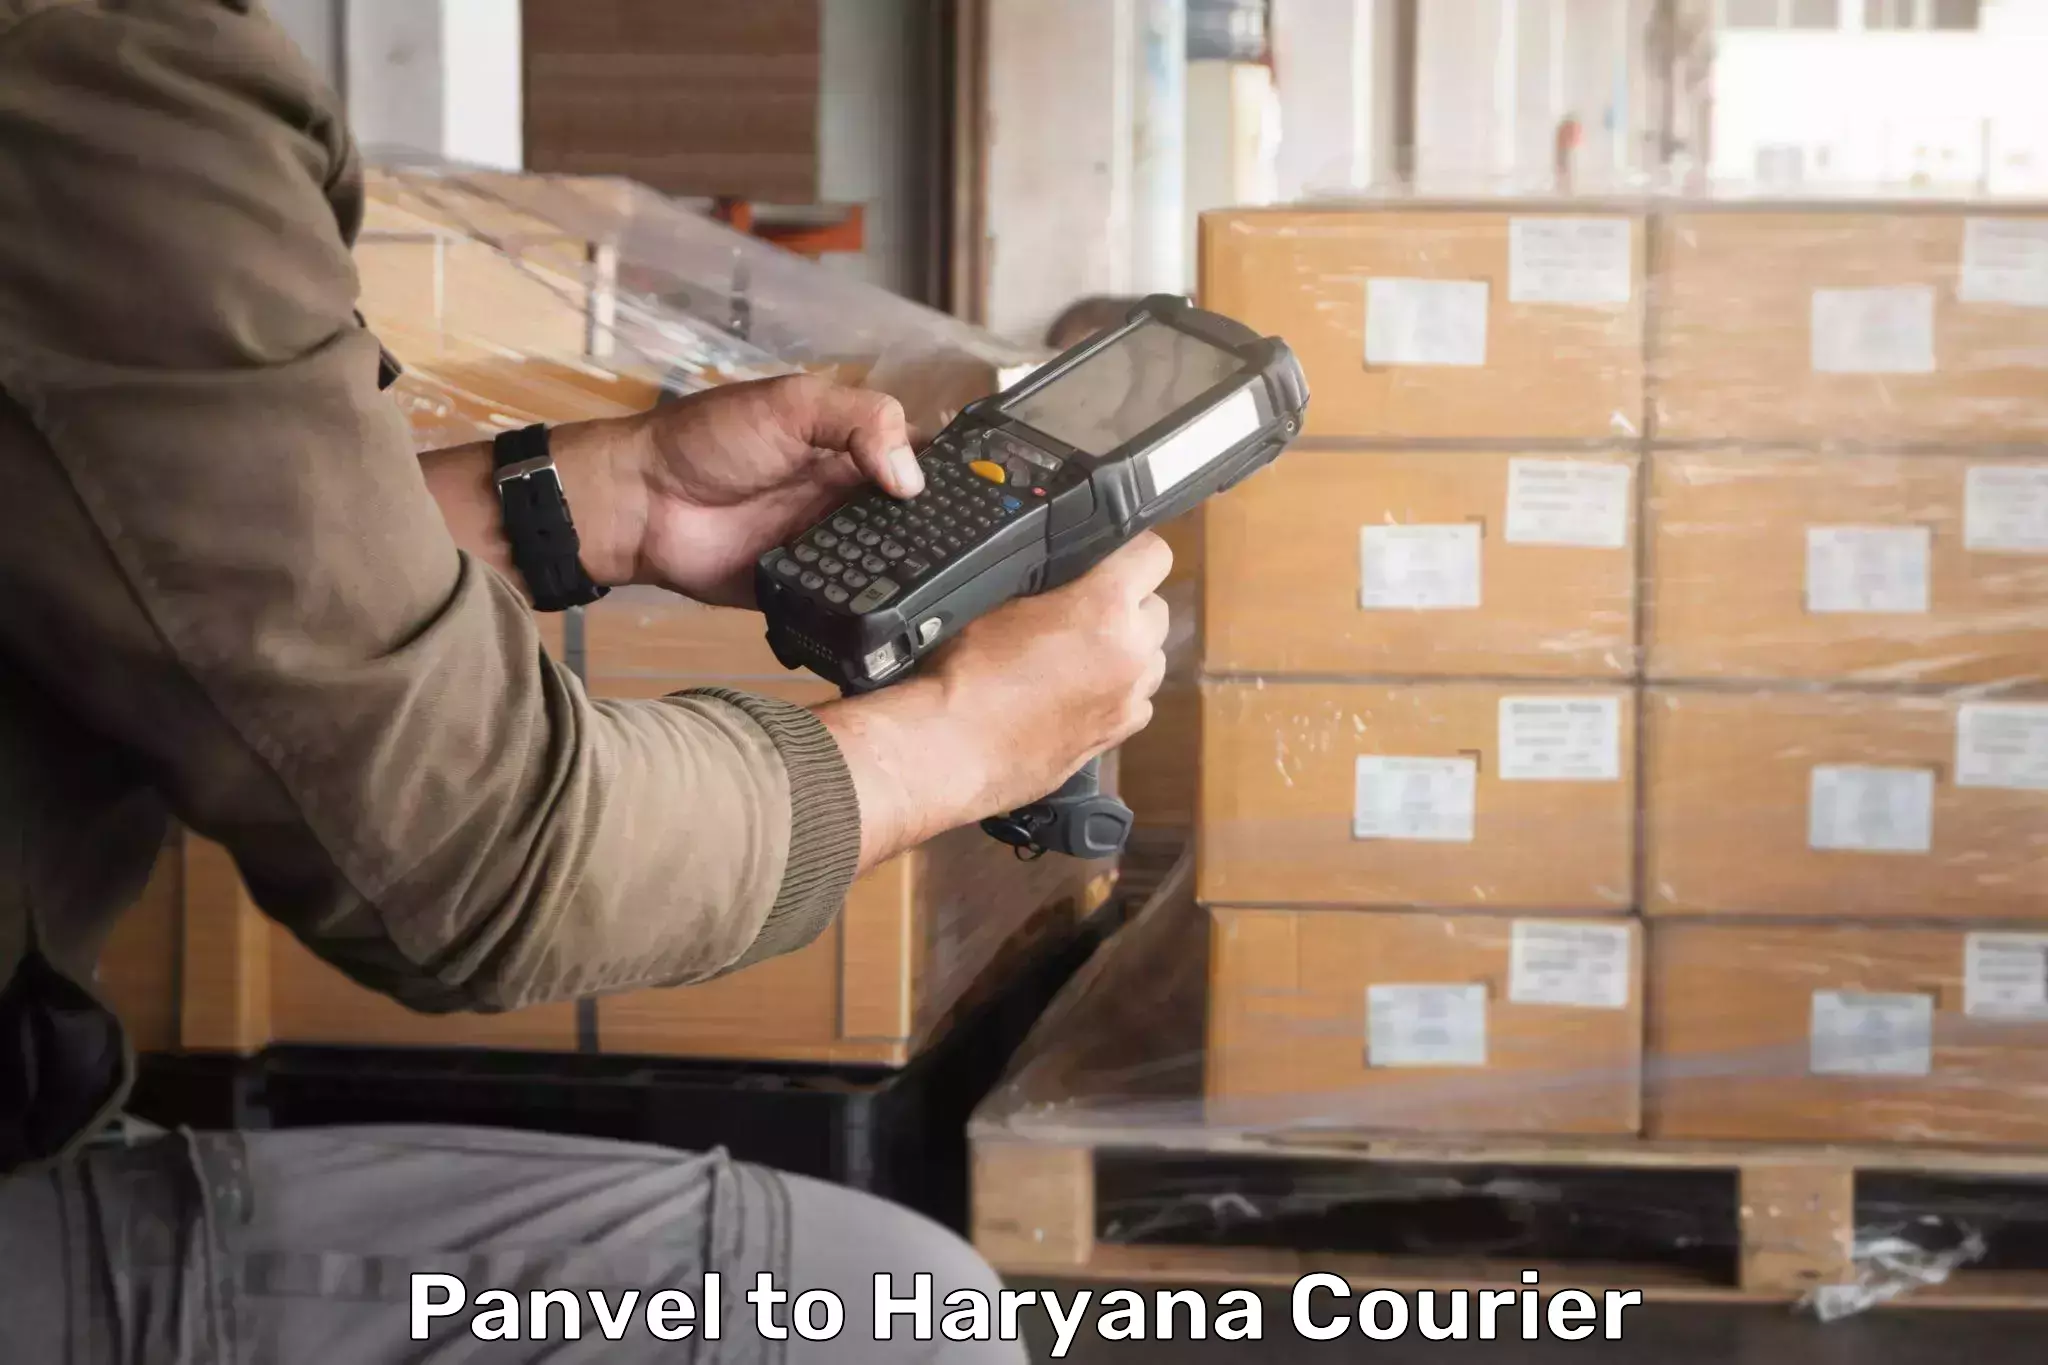 24-hour delivery options Panvel to IIIT Sonepat